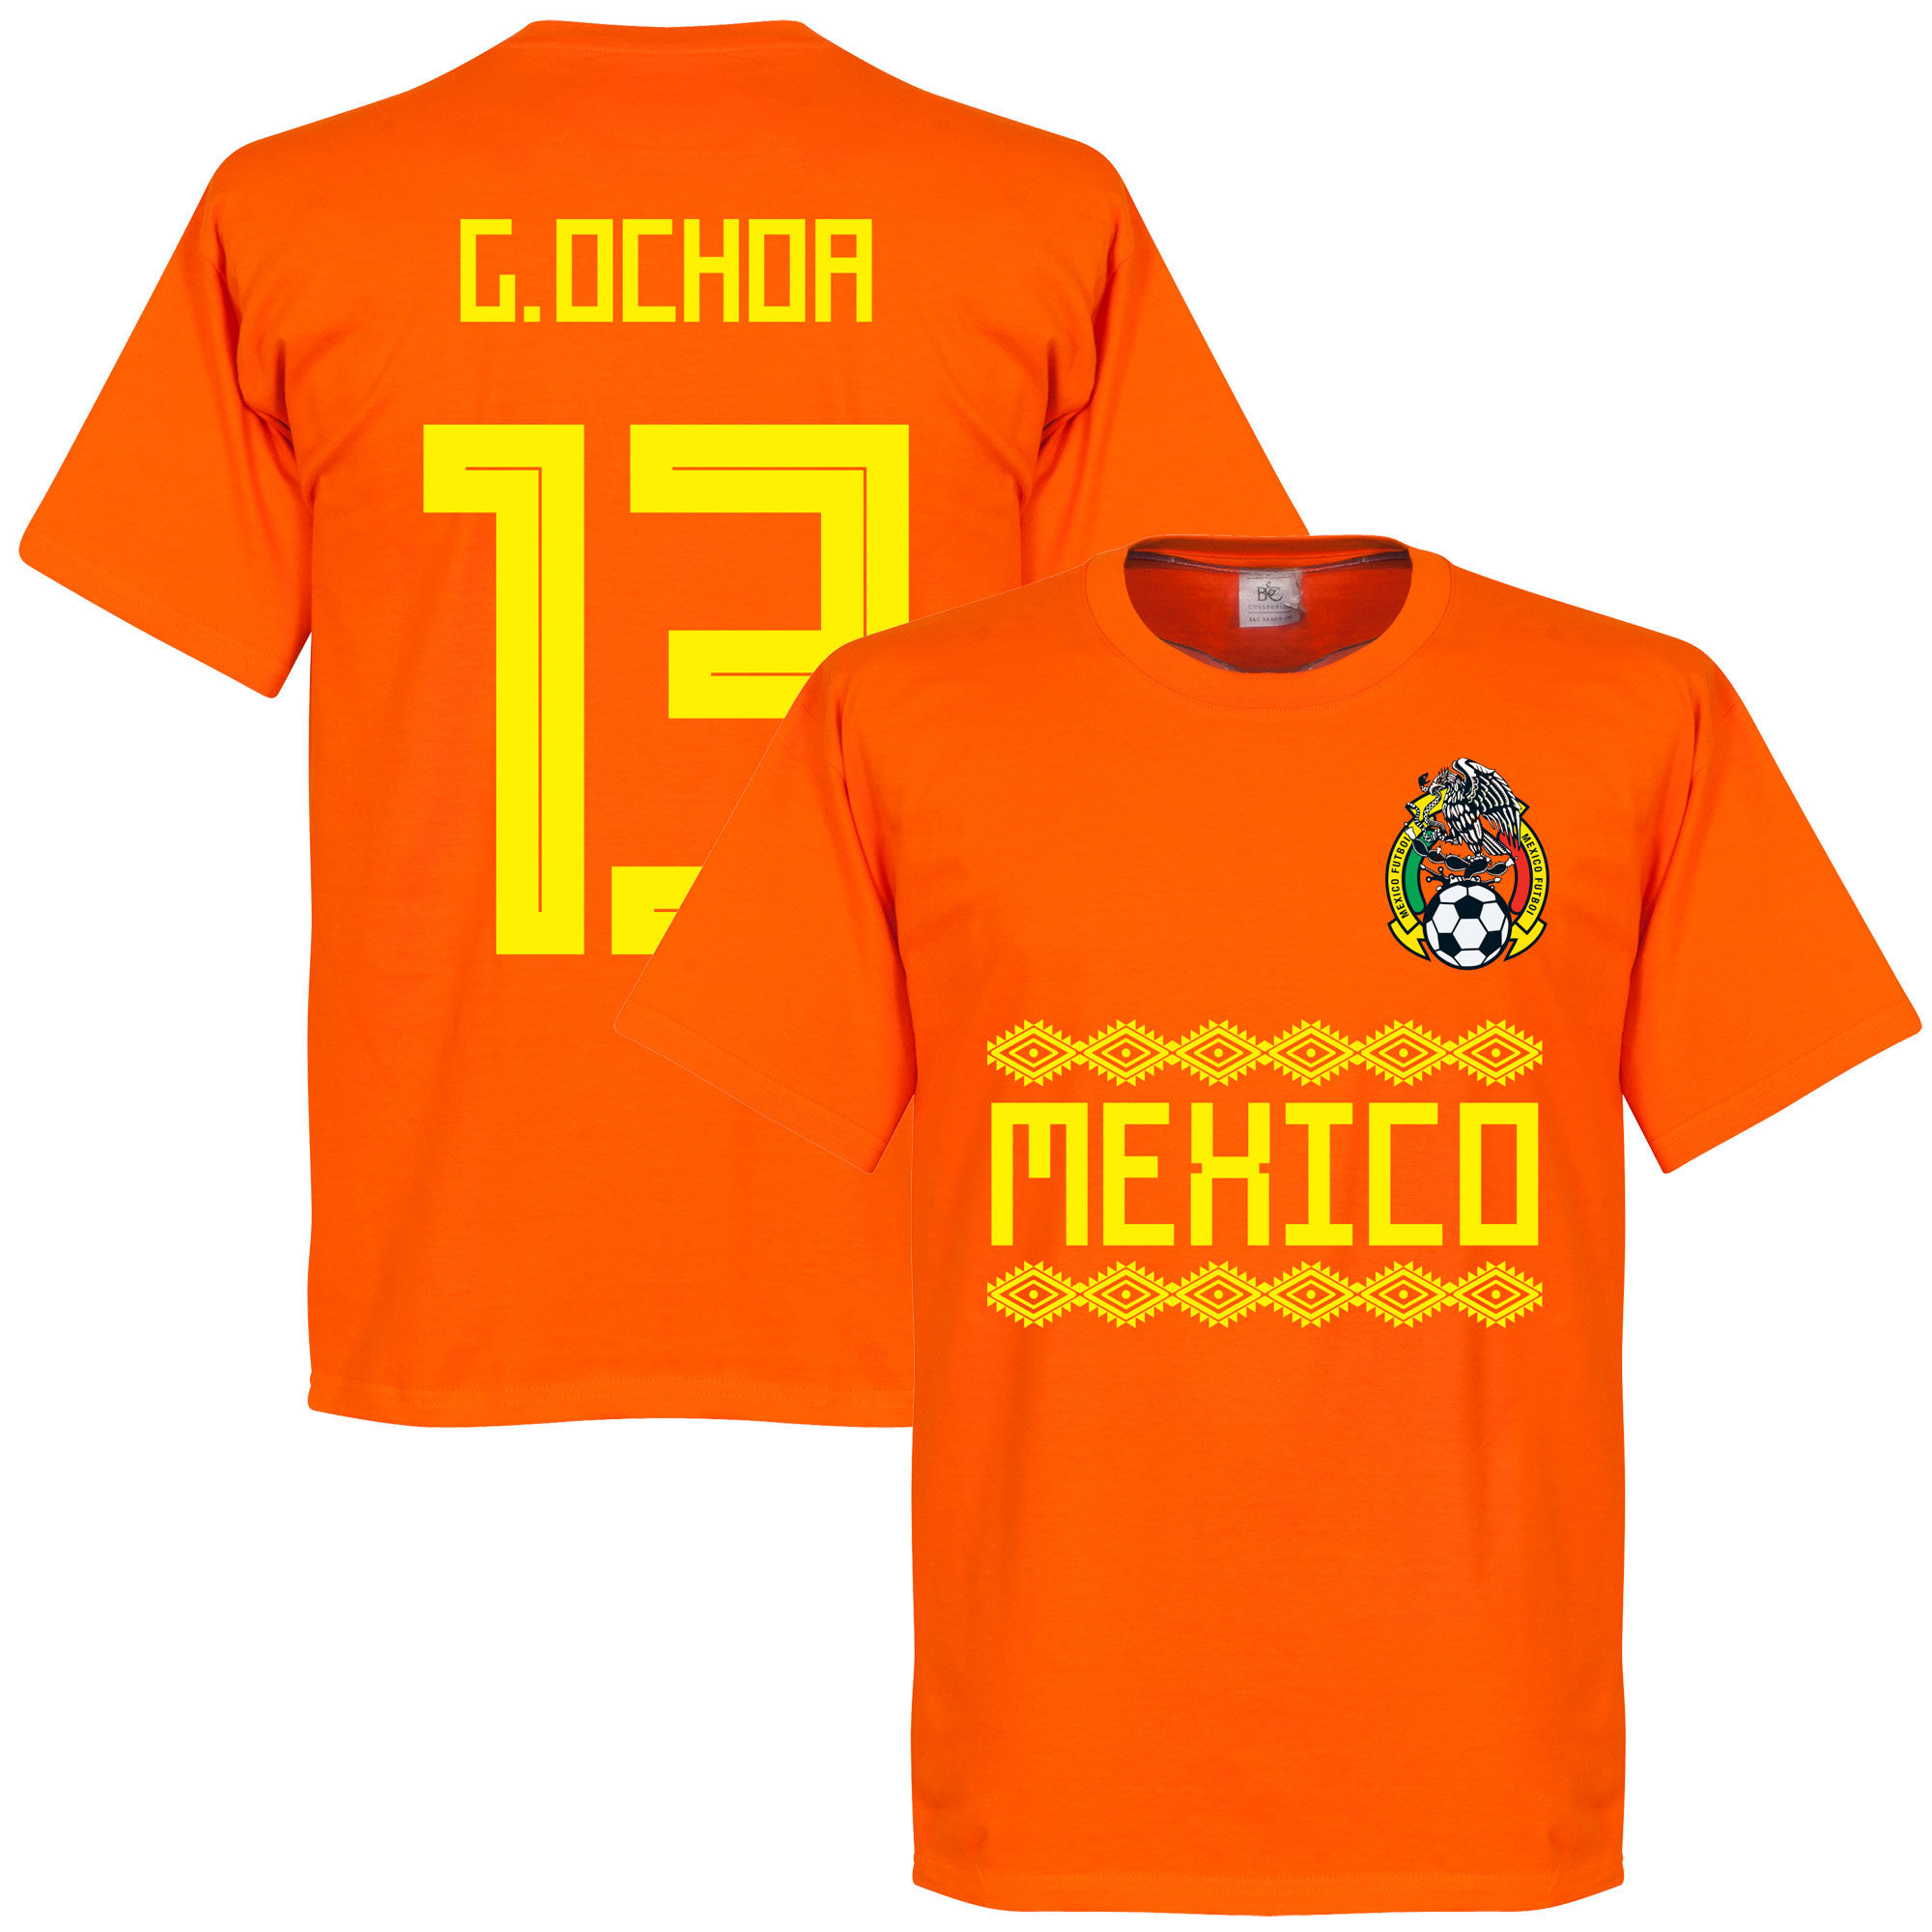 Mexiko - Tričko - oranžové, Guillermo Ochoa, číslo 13